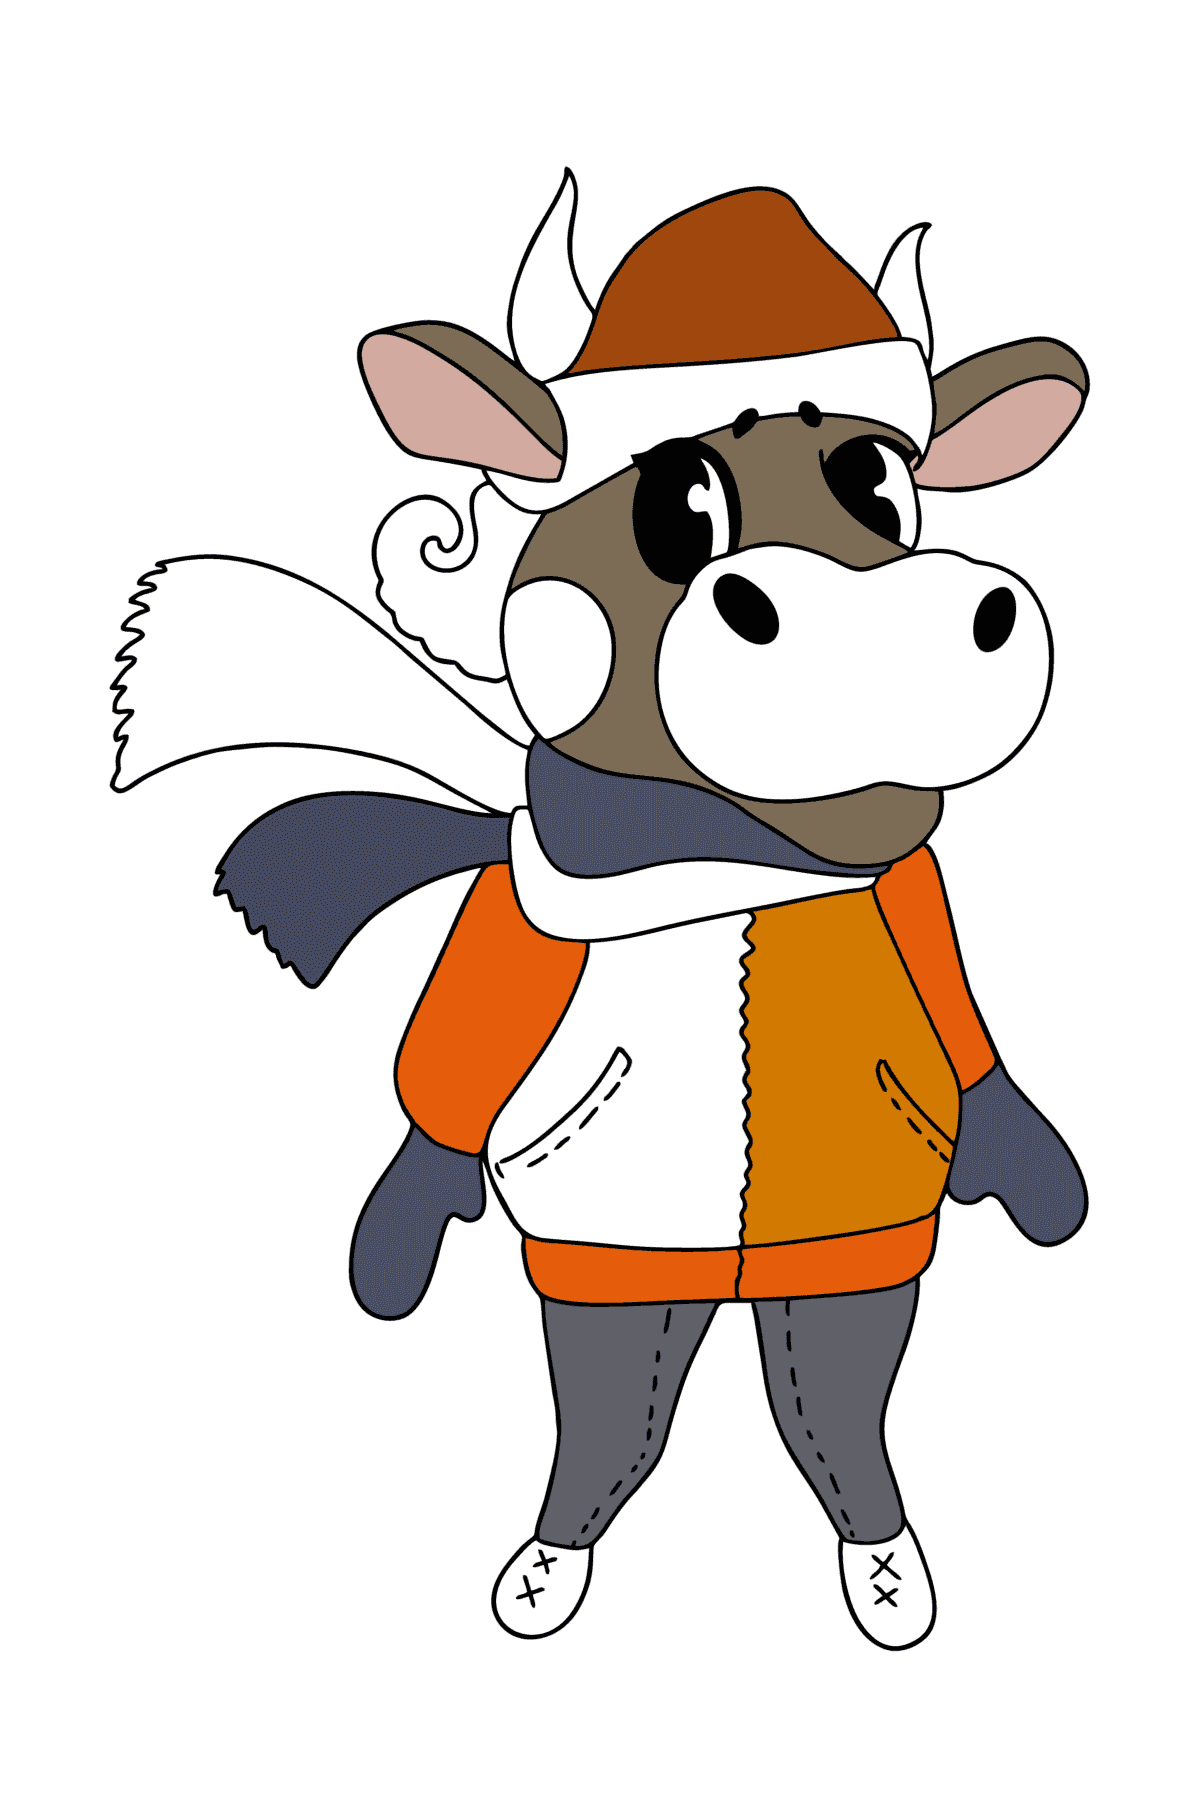 Boyama sayfası kawaii inek - Boyamalar çocuklar için